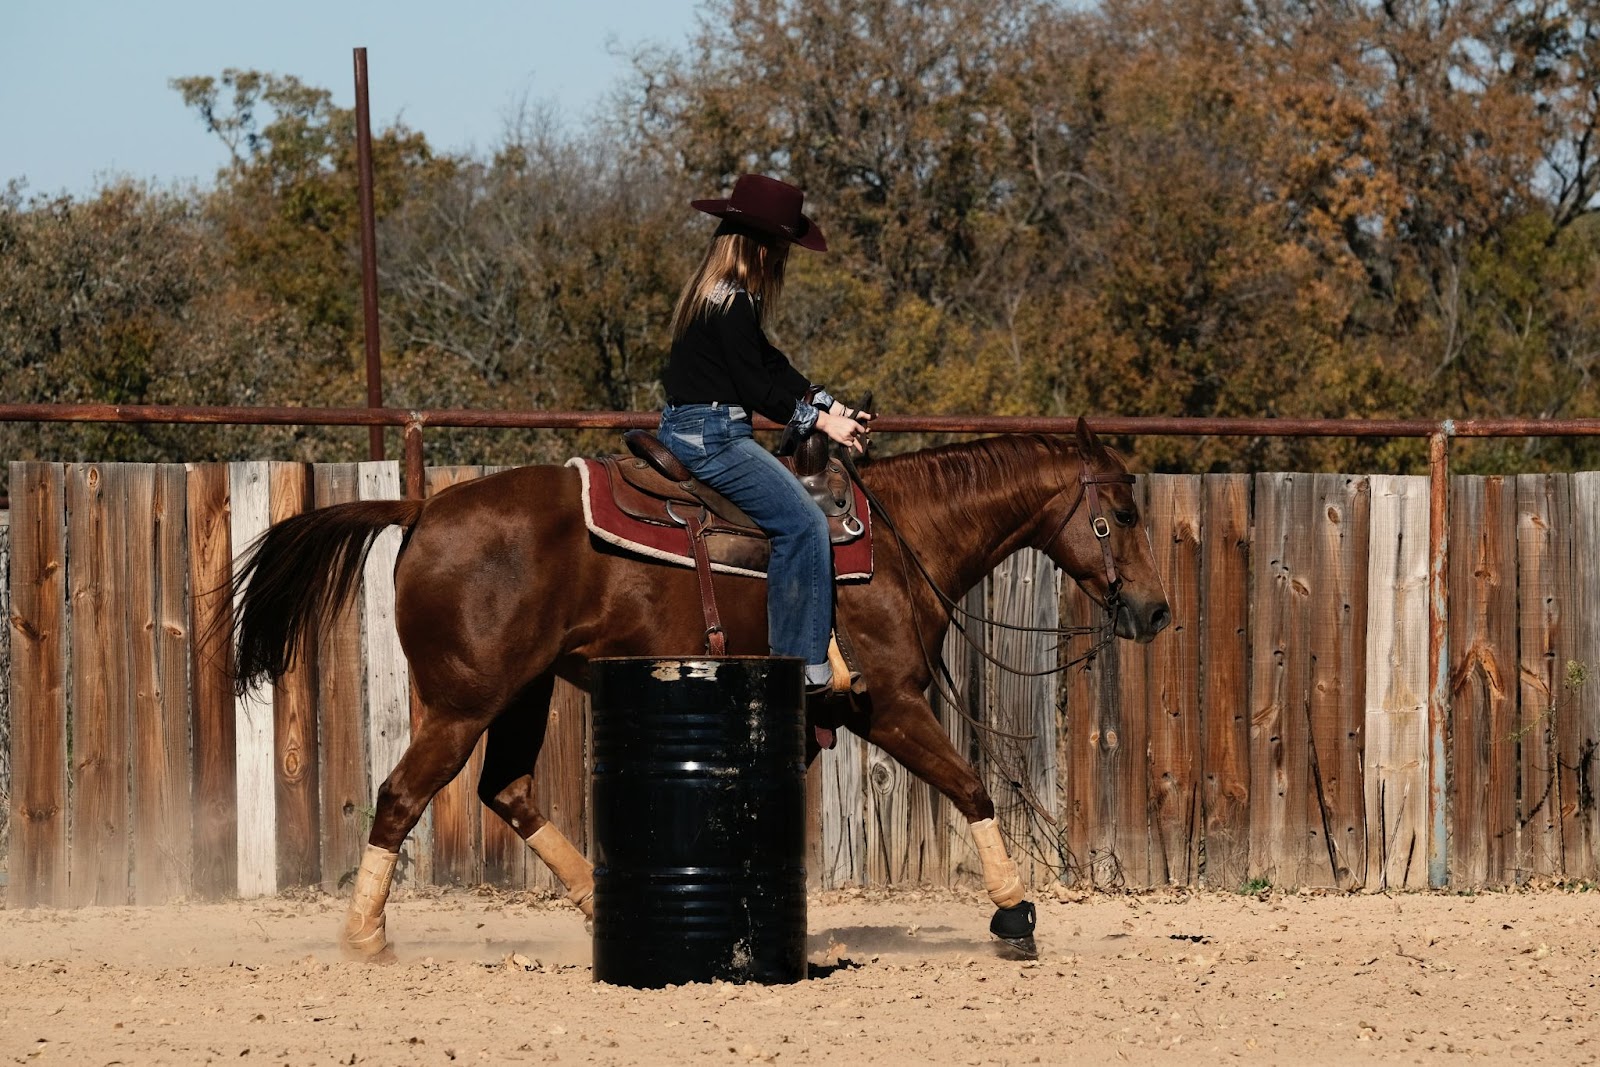 Peoa montada em seu cavalo, atrás de um barril metálico preto e em frente a uma cerca de madeira.